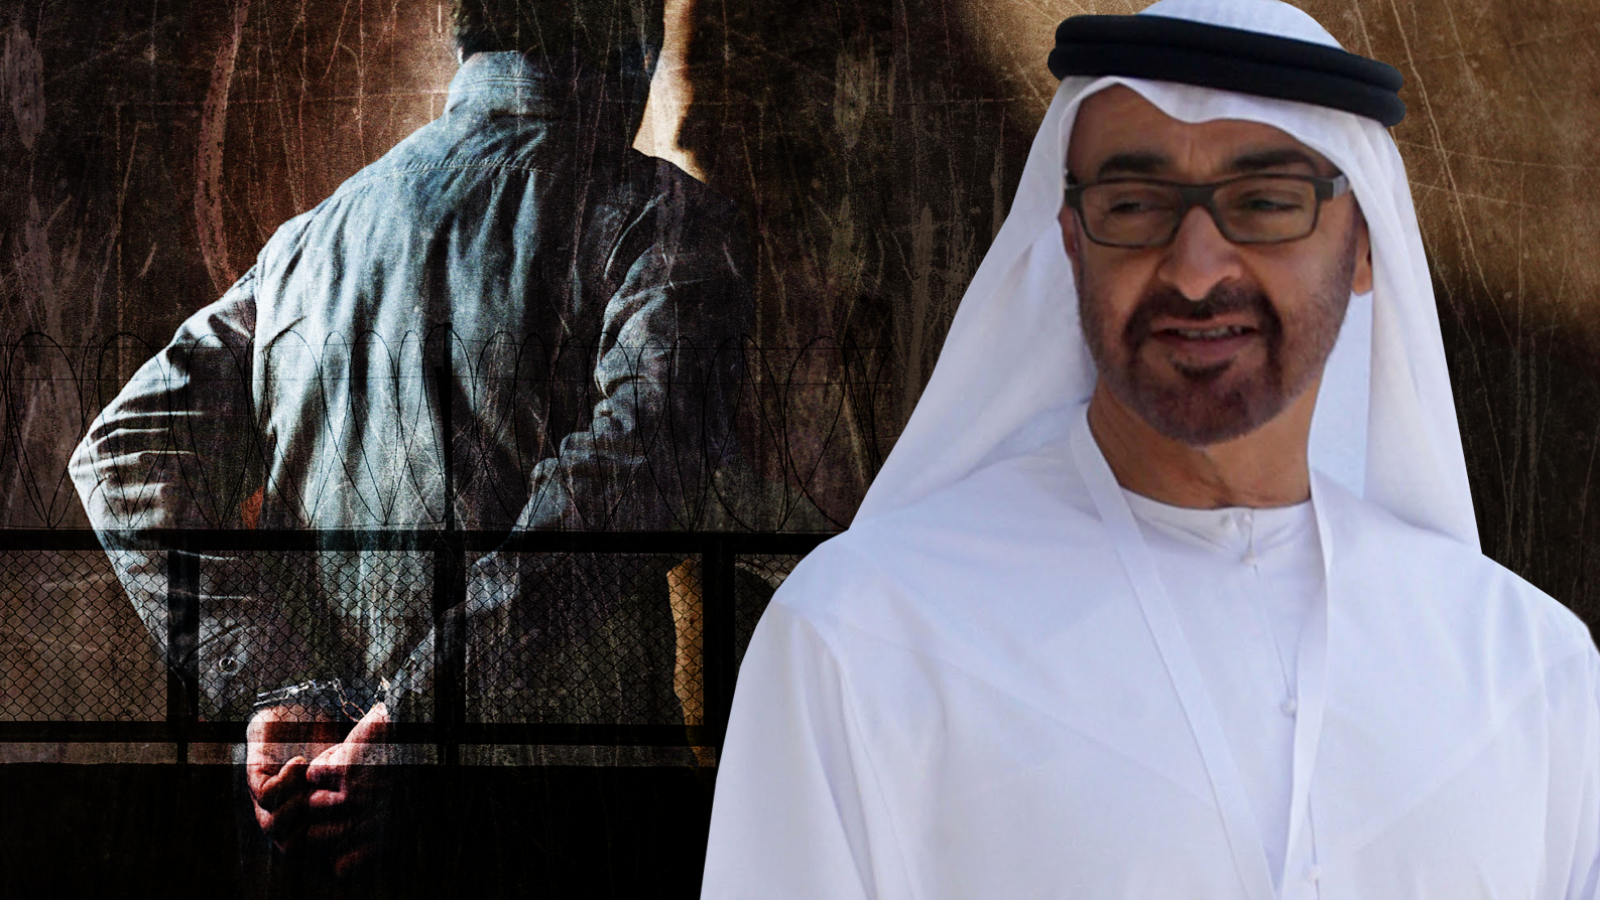 أضحت سجون الإمارات السرية المتعددة في مدن الجنوب وانتهاكاتها لحقوق المعتقلين بها حديث منظمات حقوق الإنسان على المستويين الإقليمي والدولي